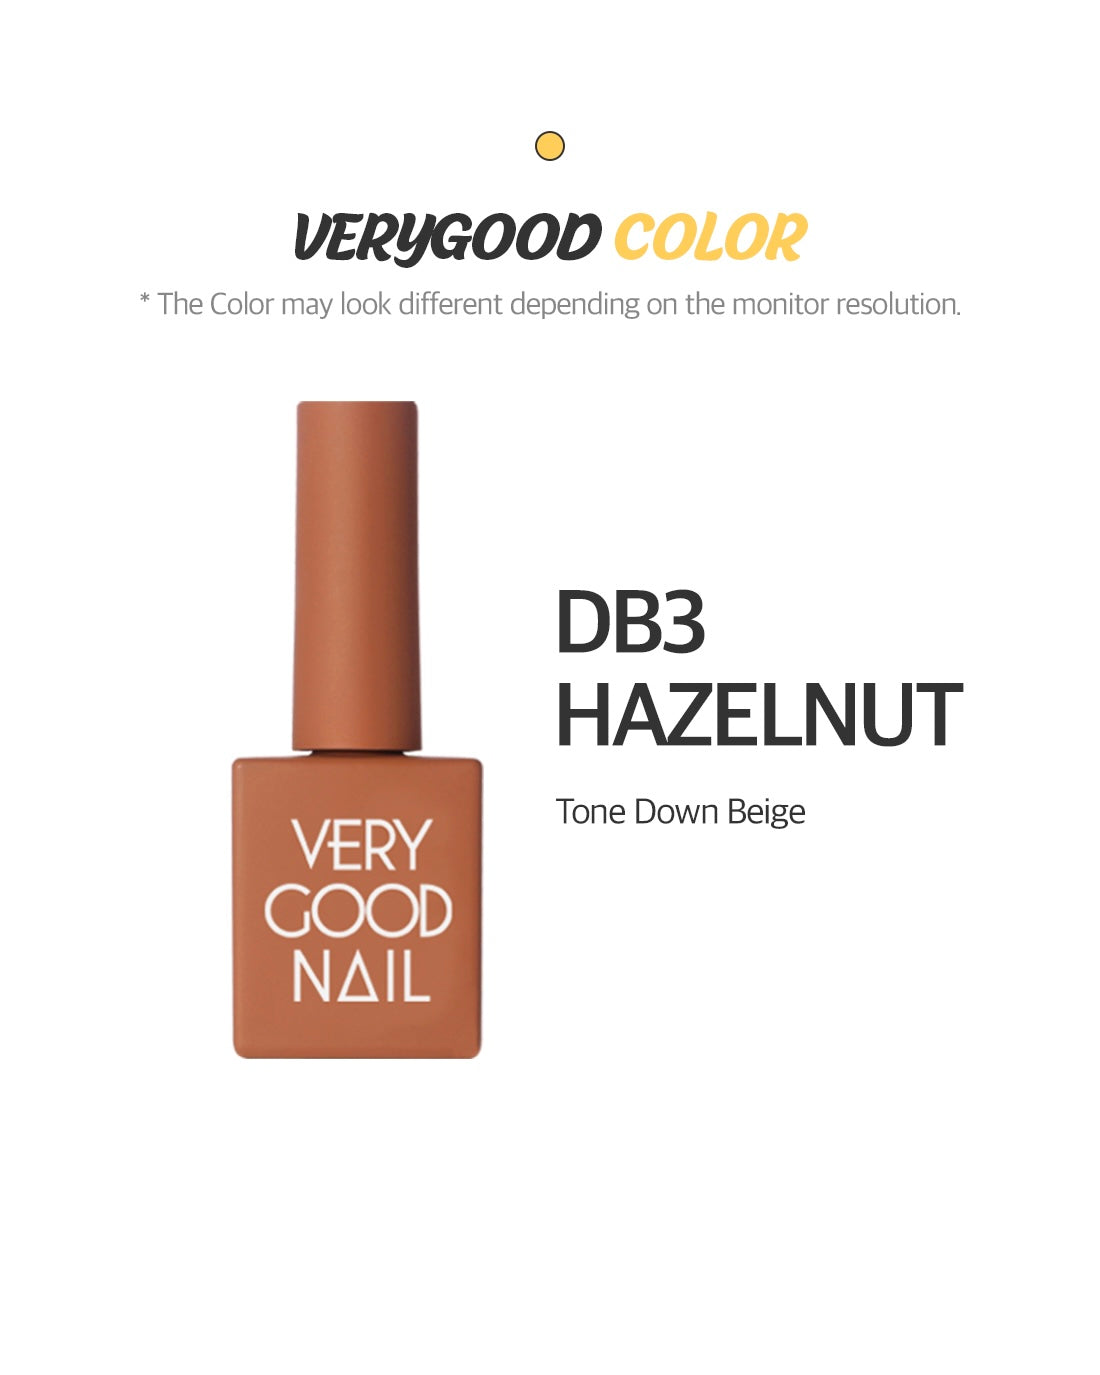 DB3 - Hazelnut